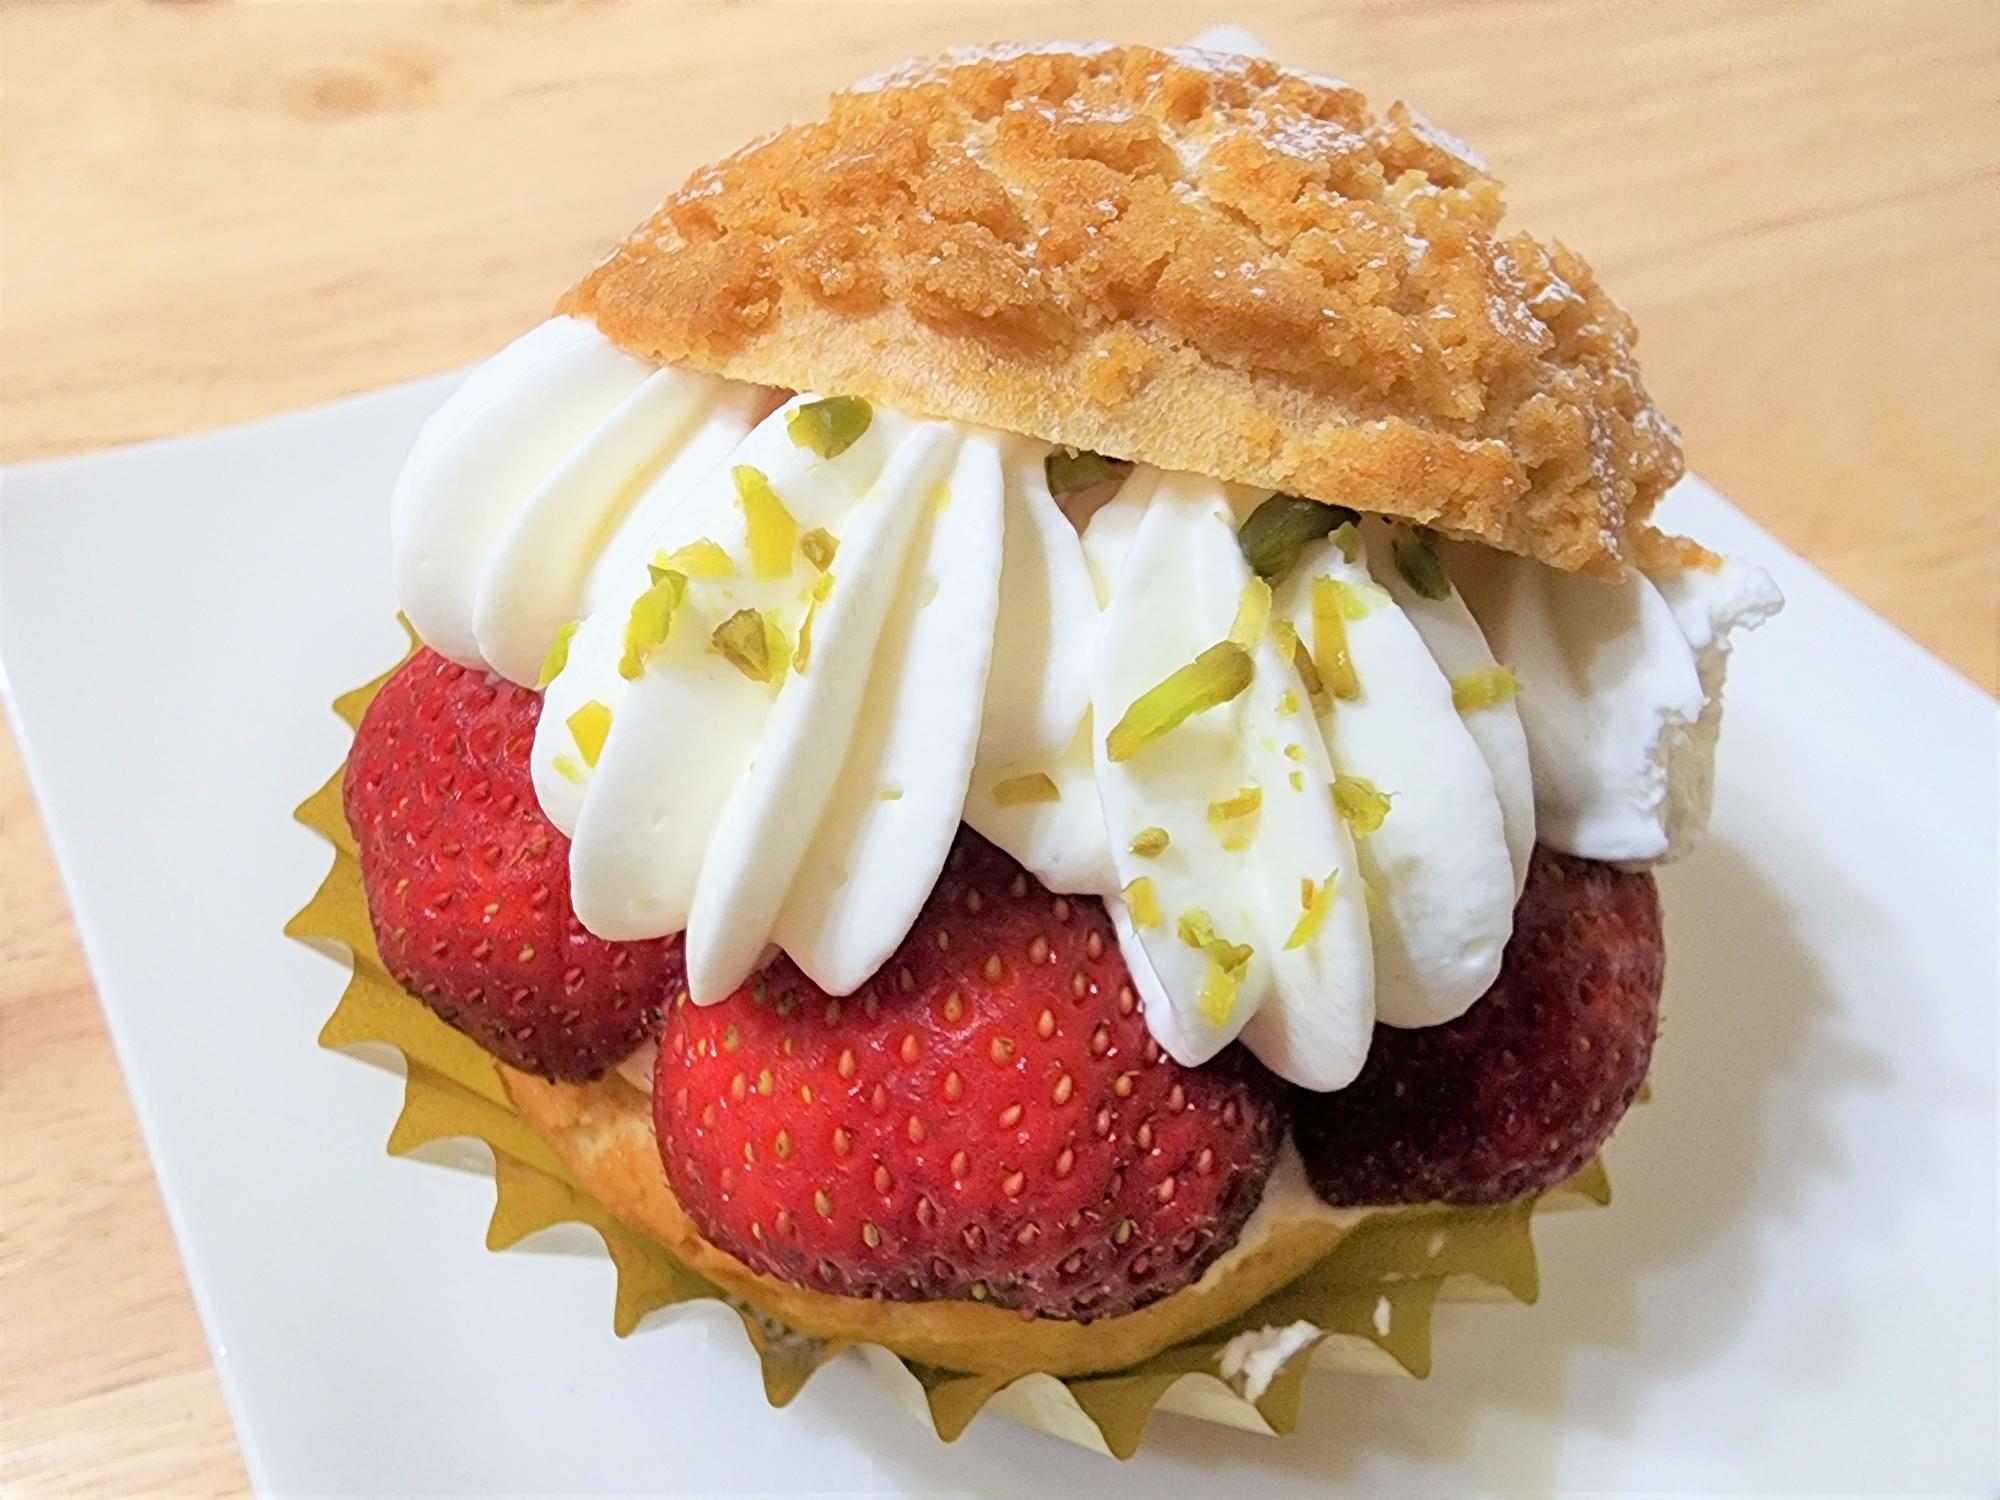 2023年5月31日（水）に閉店予定となっている「洋菓子店 ロワゾー・ブリュー」の「苺のシュークリーム」。